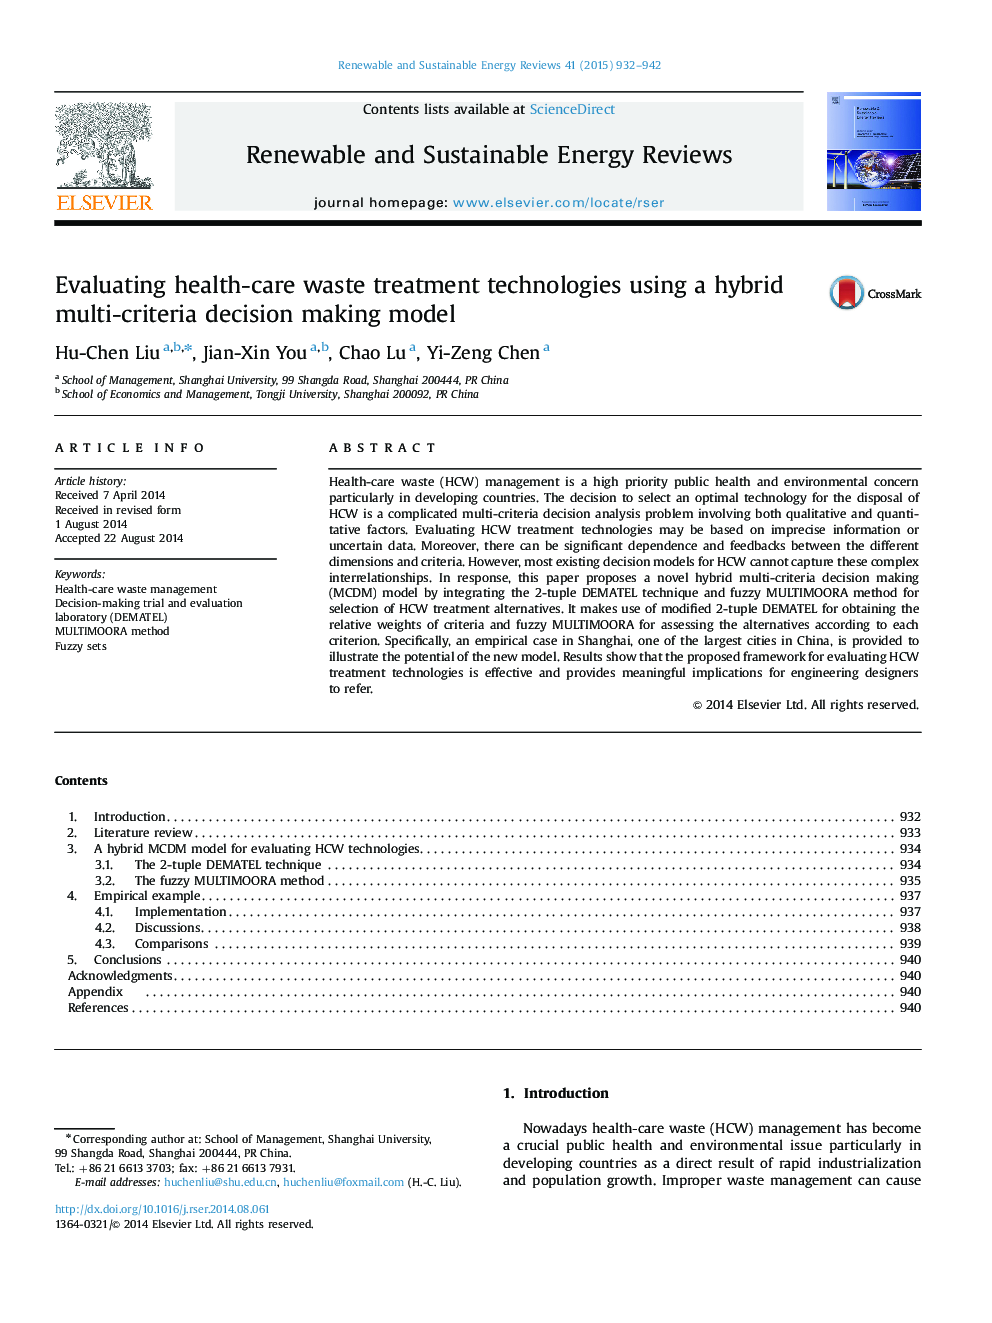 ارزیابی فن آوری های درمان زباله های بهداشتی با استفاده از مدل تصمیم گیری چندمتغیره ترکیبی 